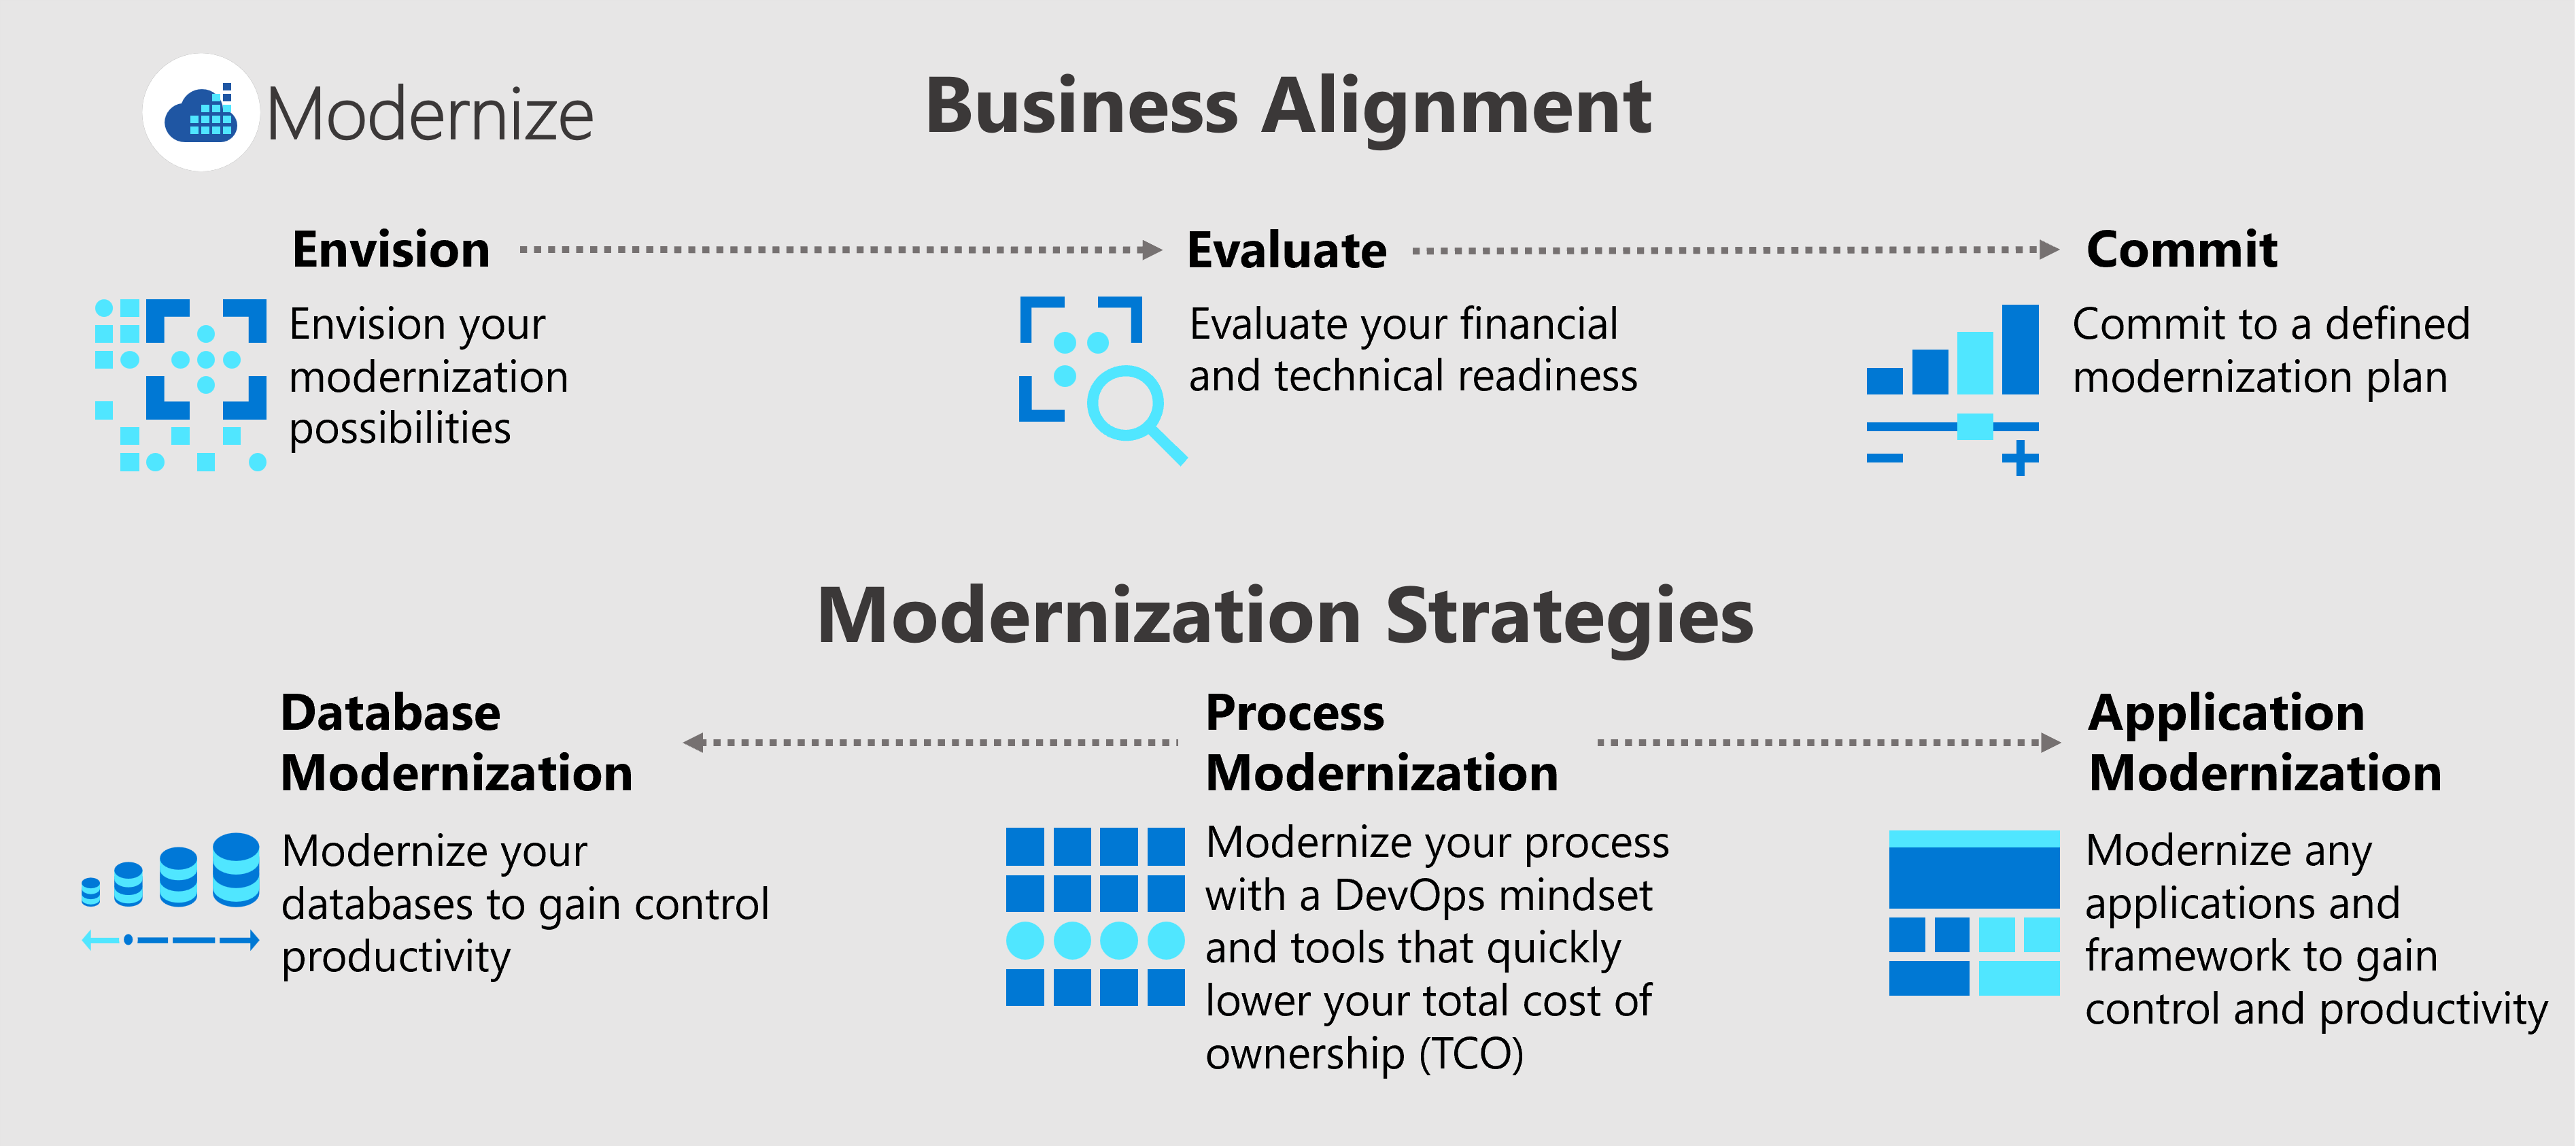 Diagramma che mostra tre processi di allineamento aziendale (prevede, valuta e commit) e tre strategie di modernizzazione (processo, applicazione e modernizzazione del database).